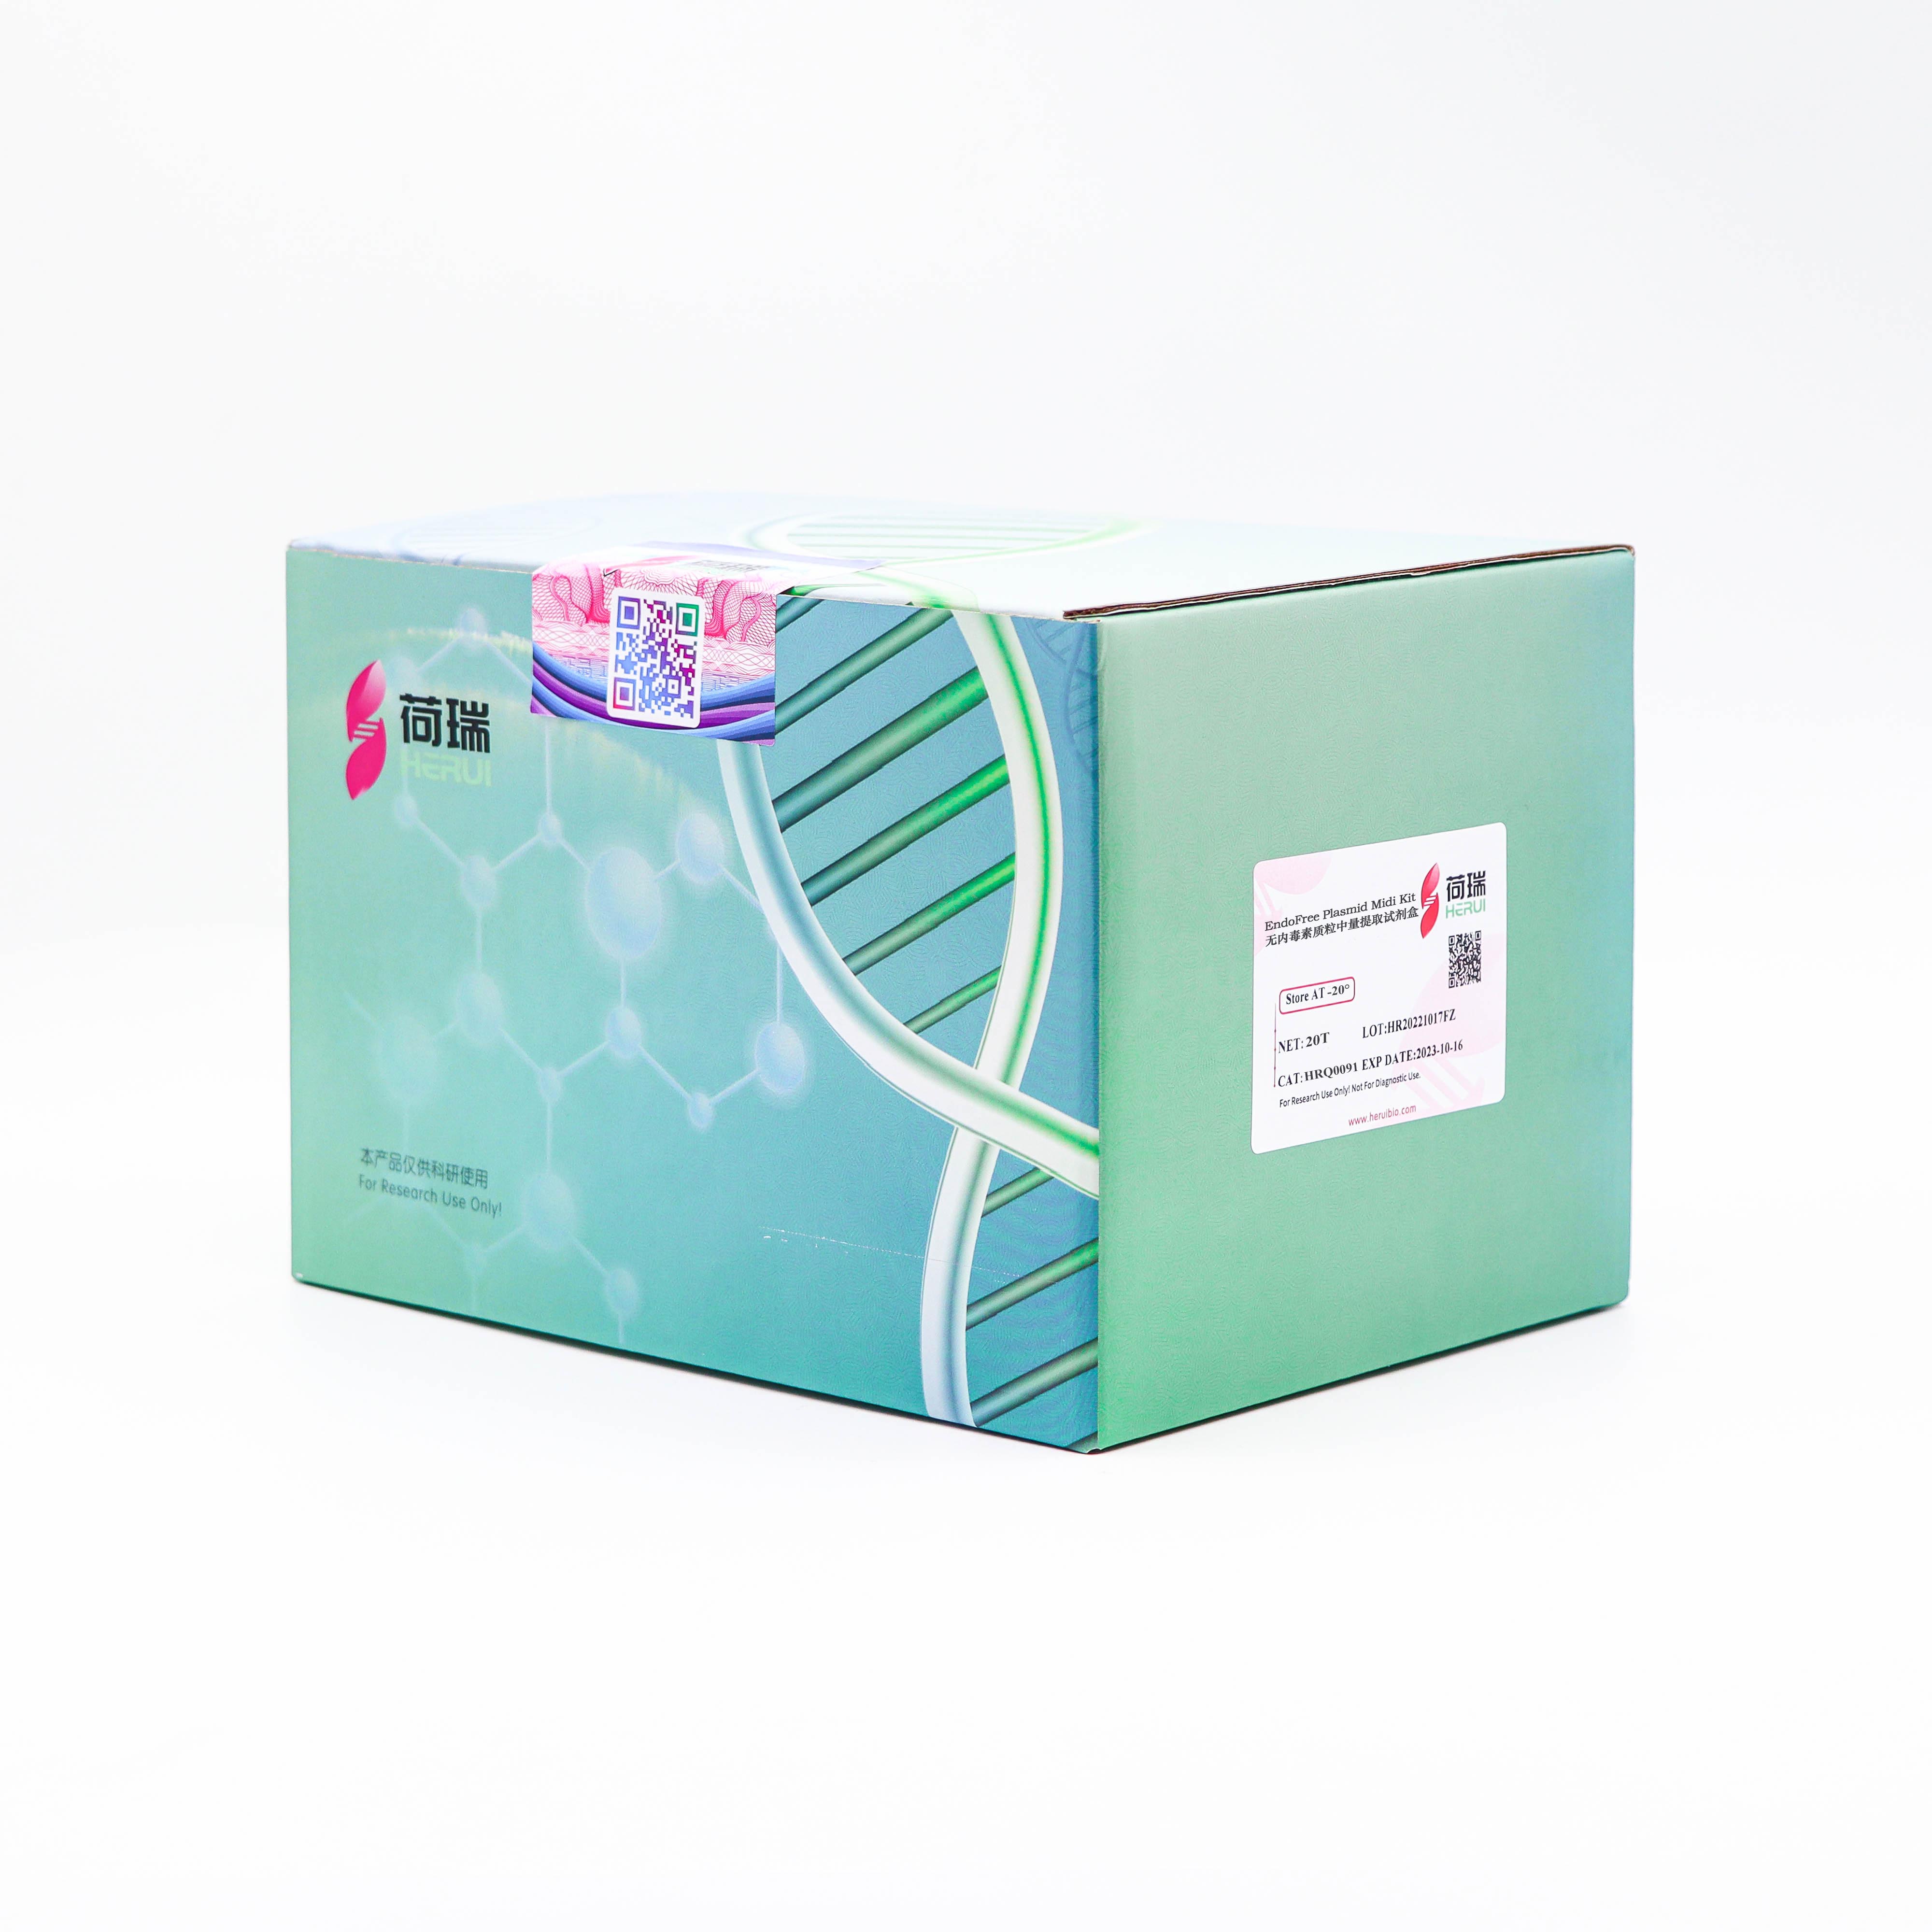 EndoFree Plasmid Midi Kit 无内毒素质粒中量提取试剂盒